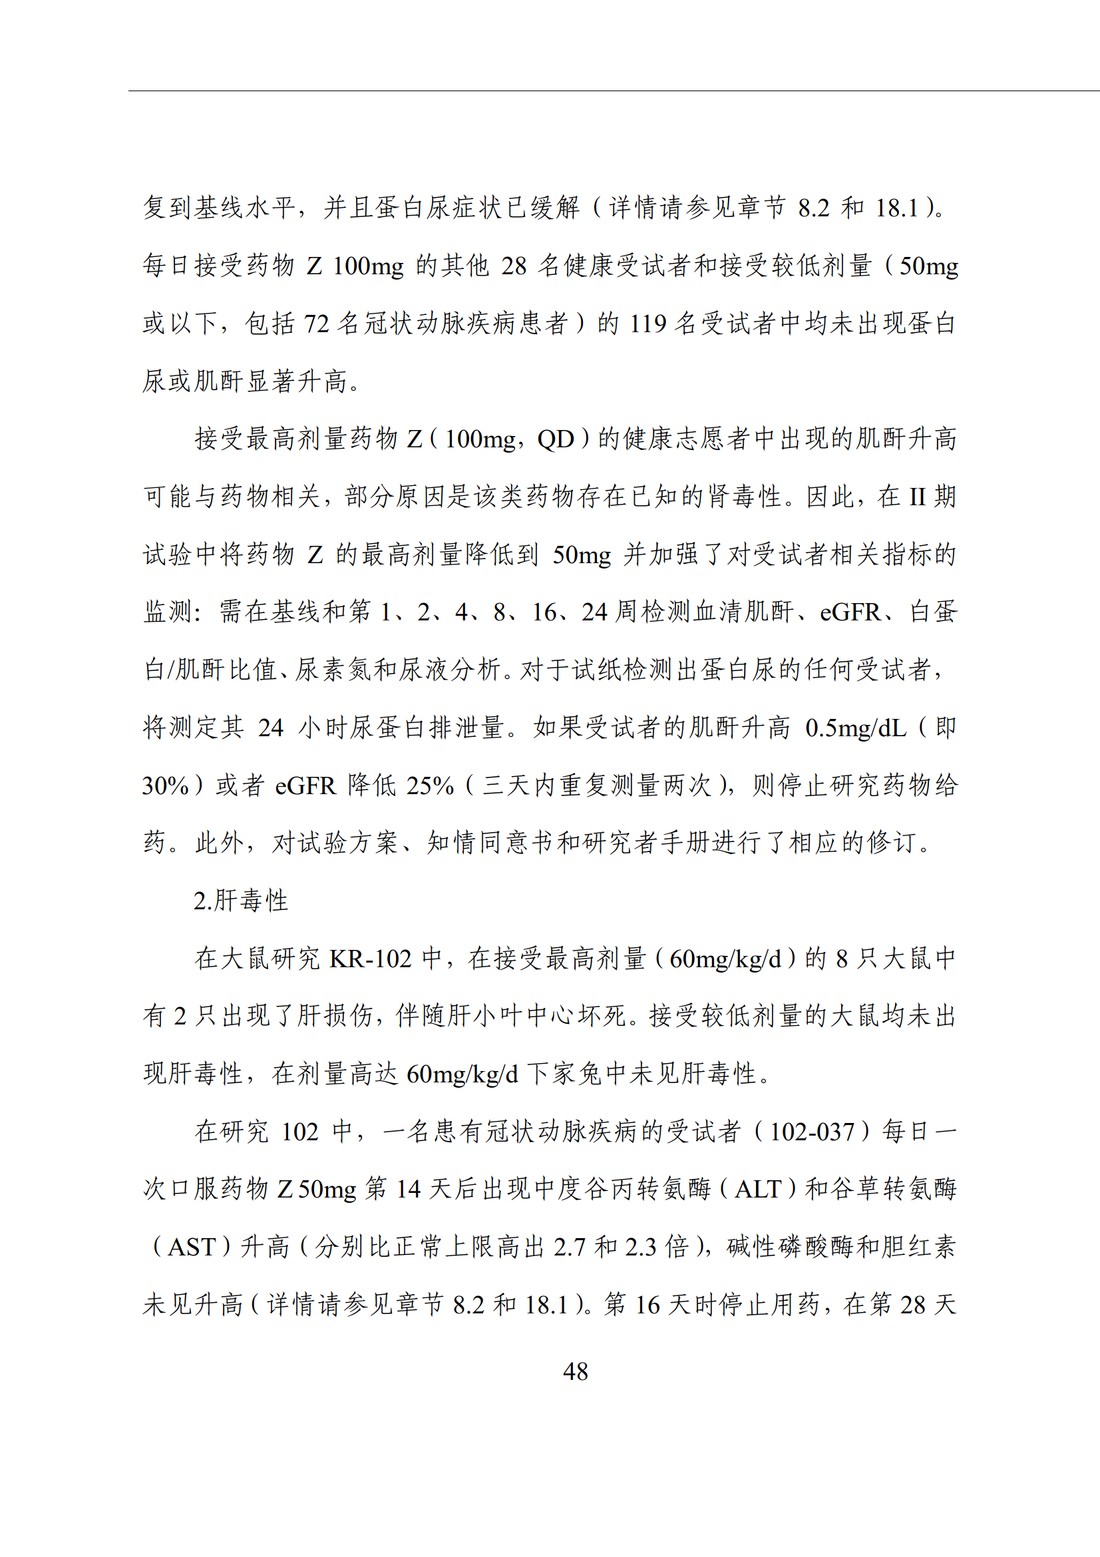 E2F 研发期间安全性更新报告(中文翻译公开征求意见稿)_53.jpg